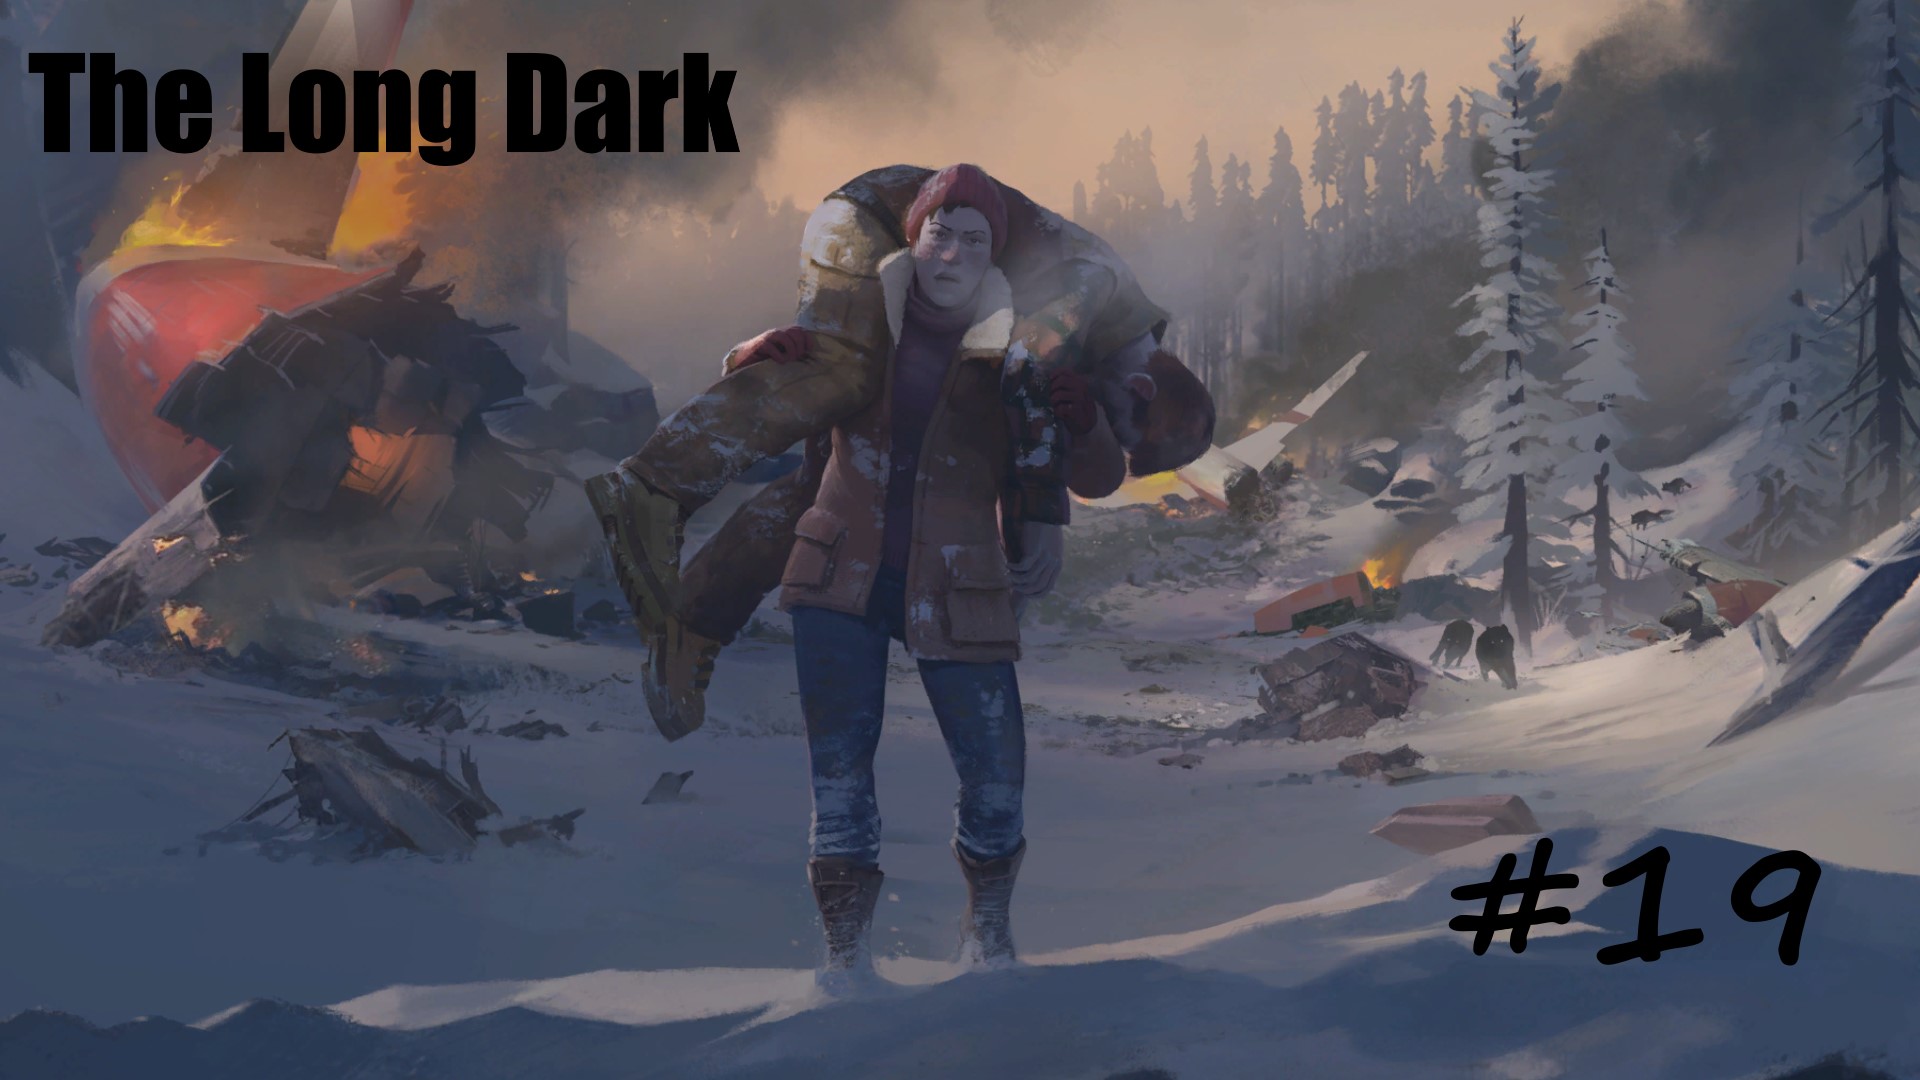 The Long Dark #19 Байки долины